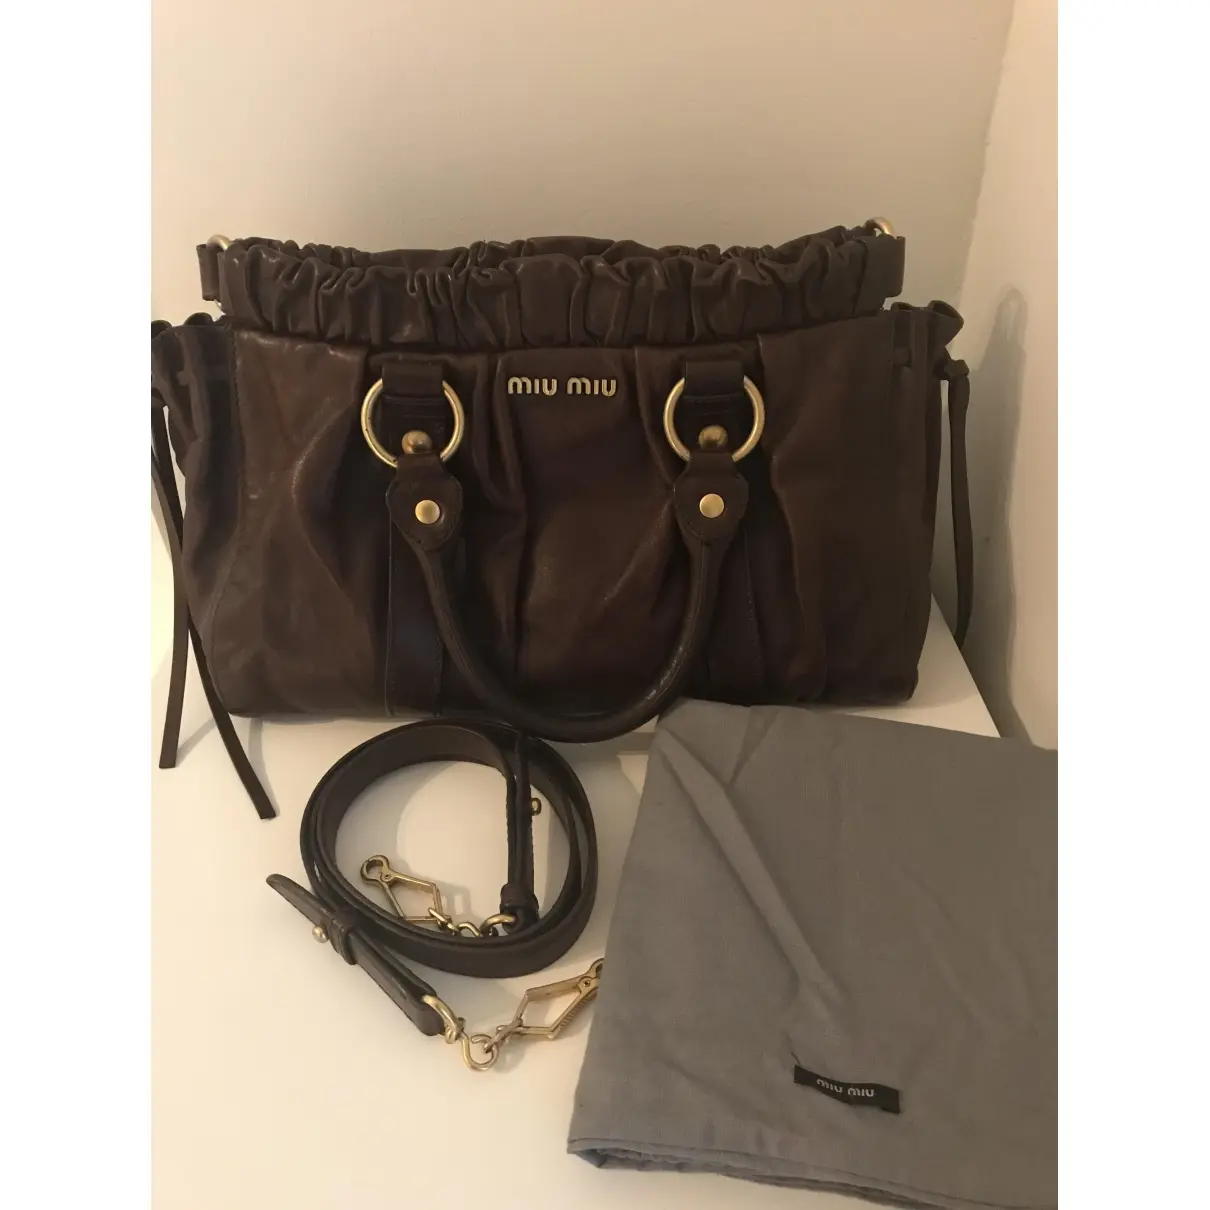 Vitello leather handbag Miu Miu